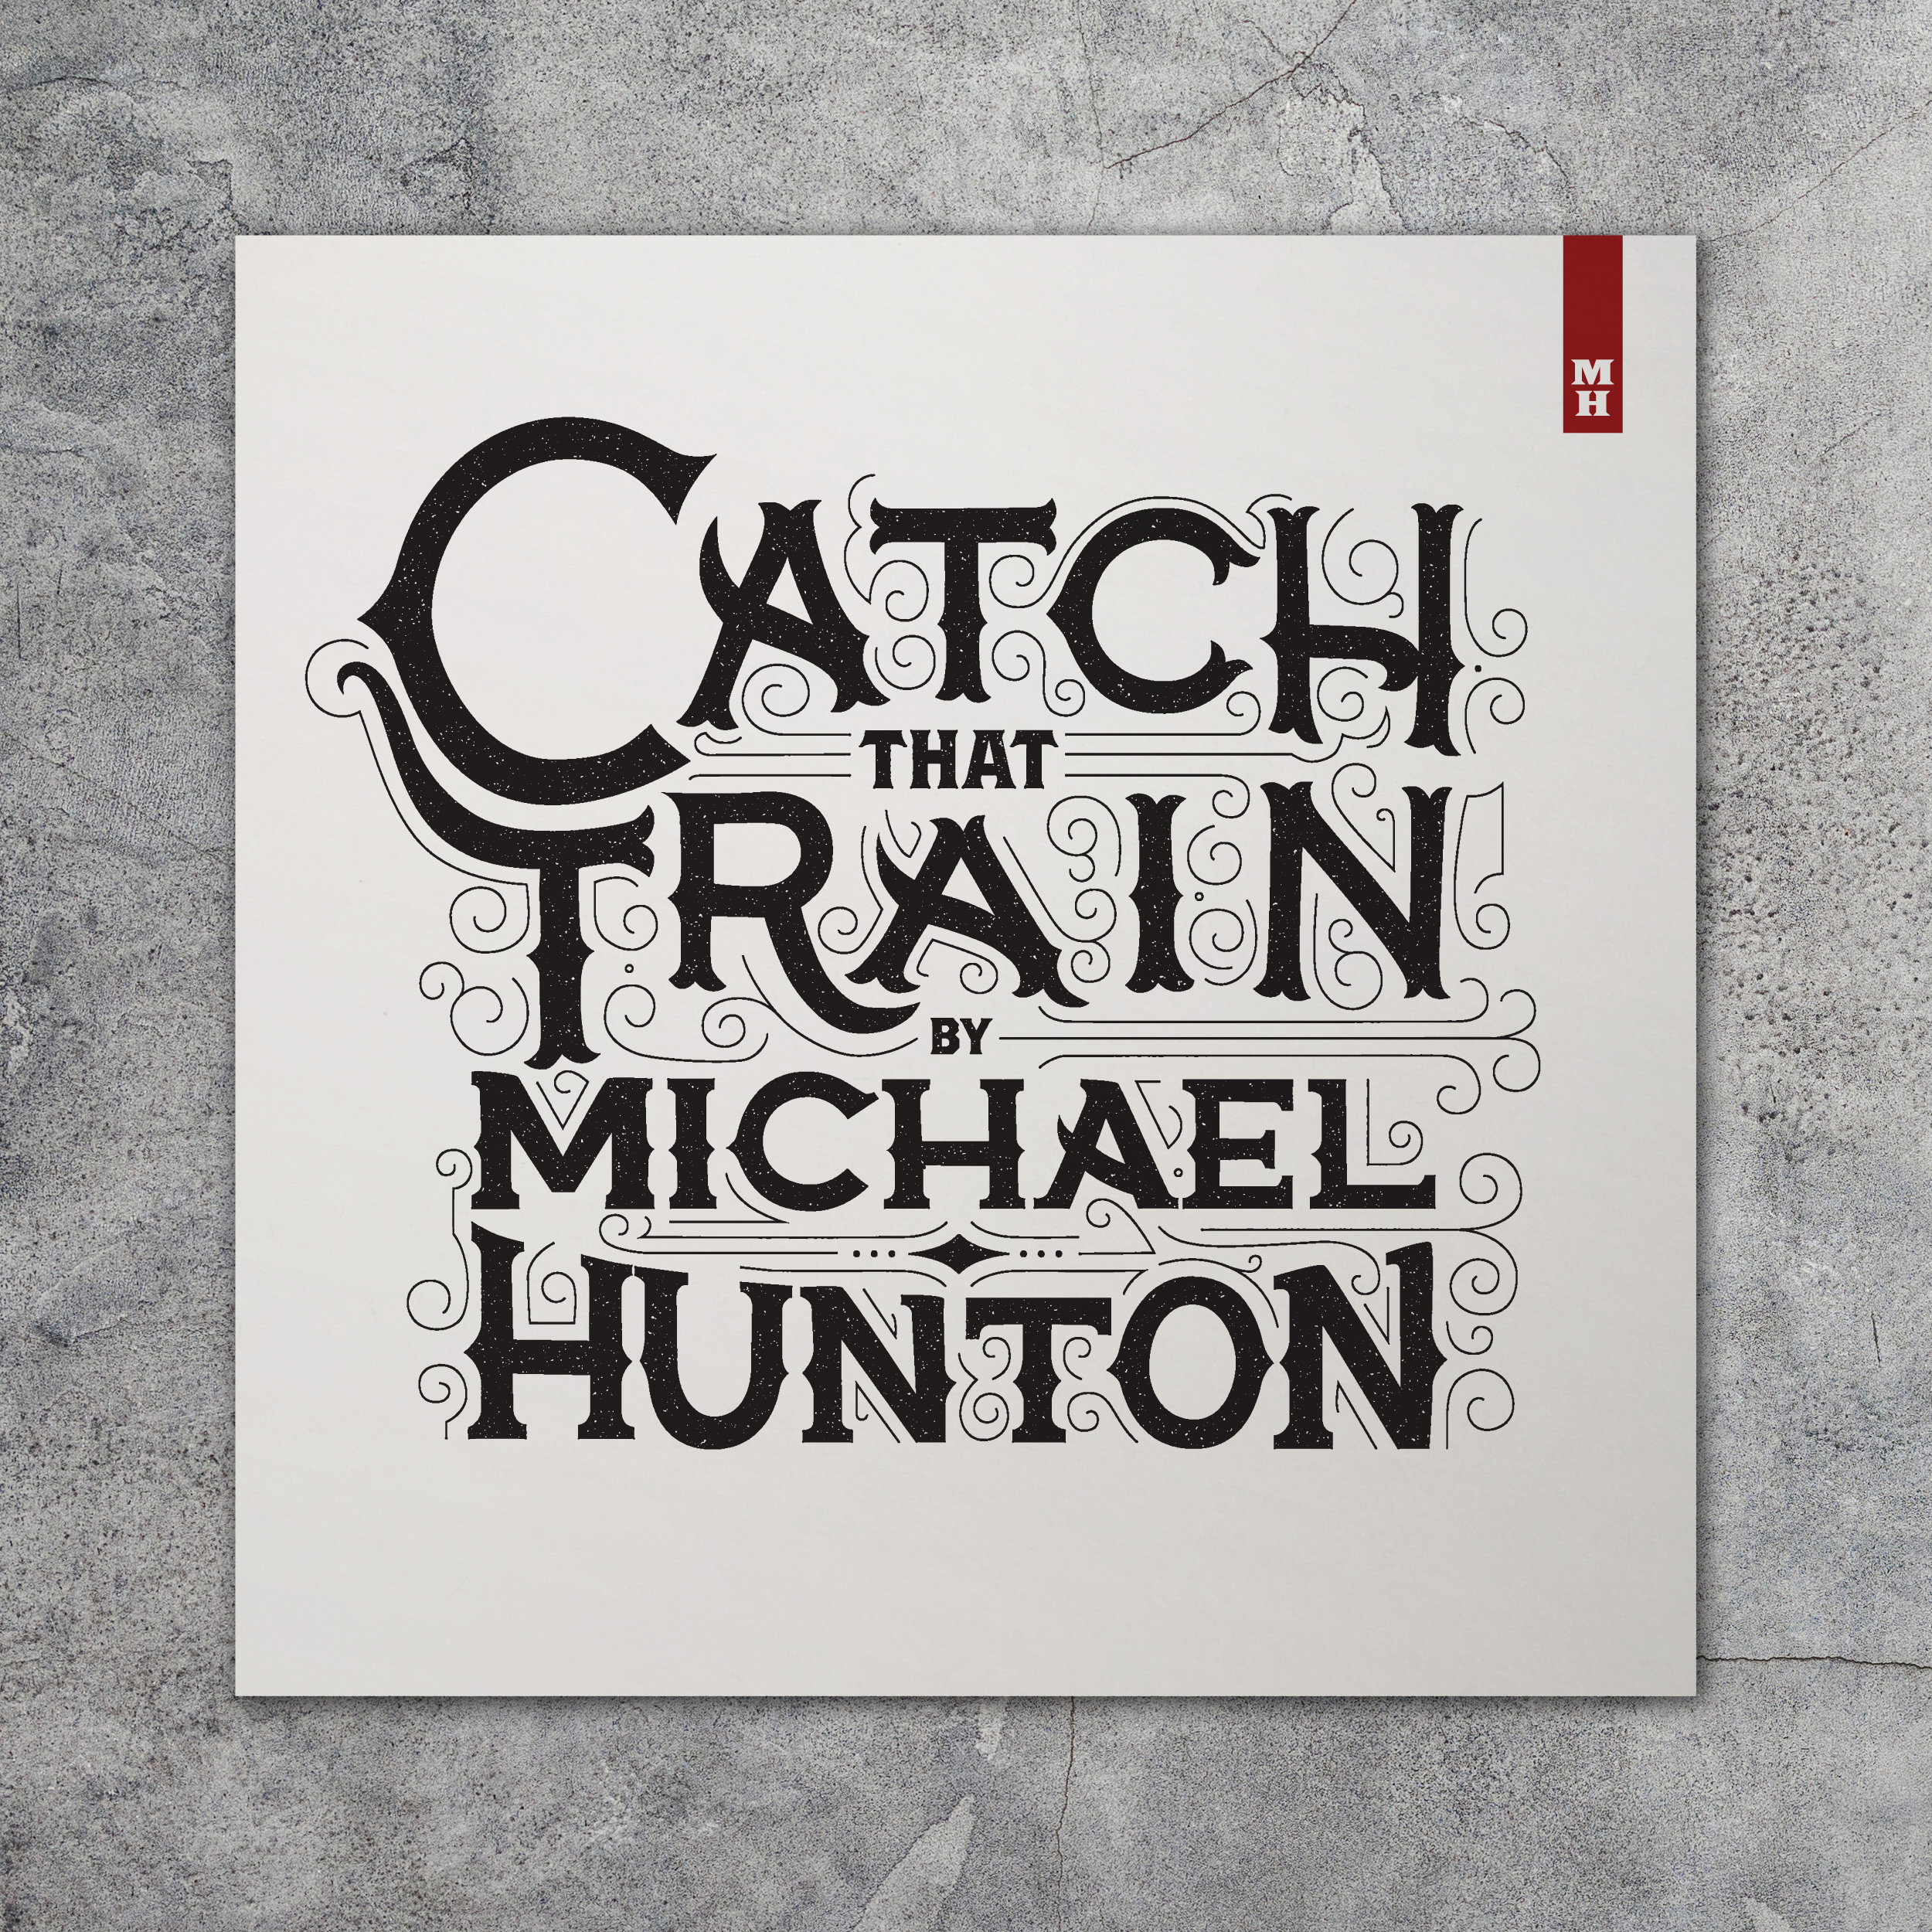 Catch That Train Album Art + Design